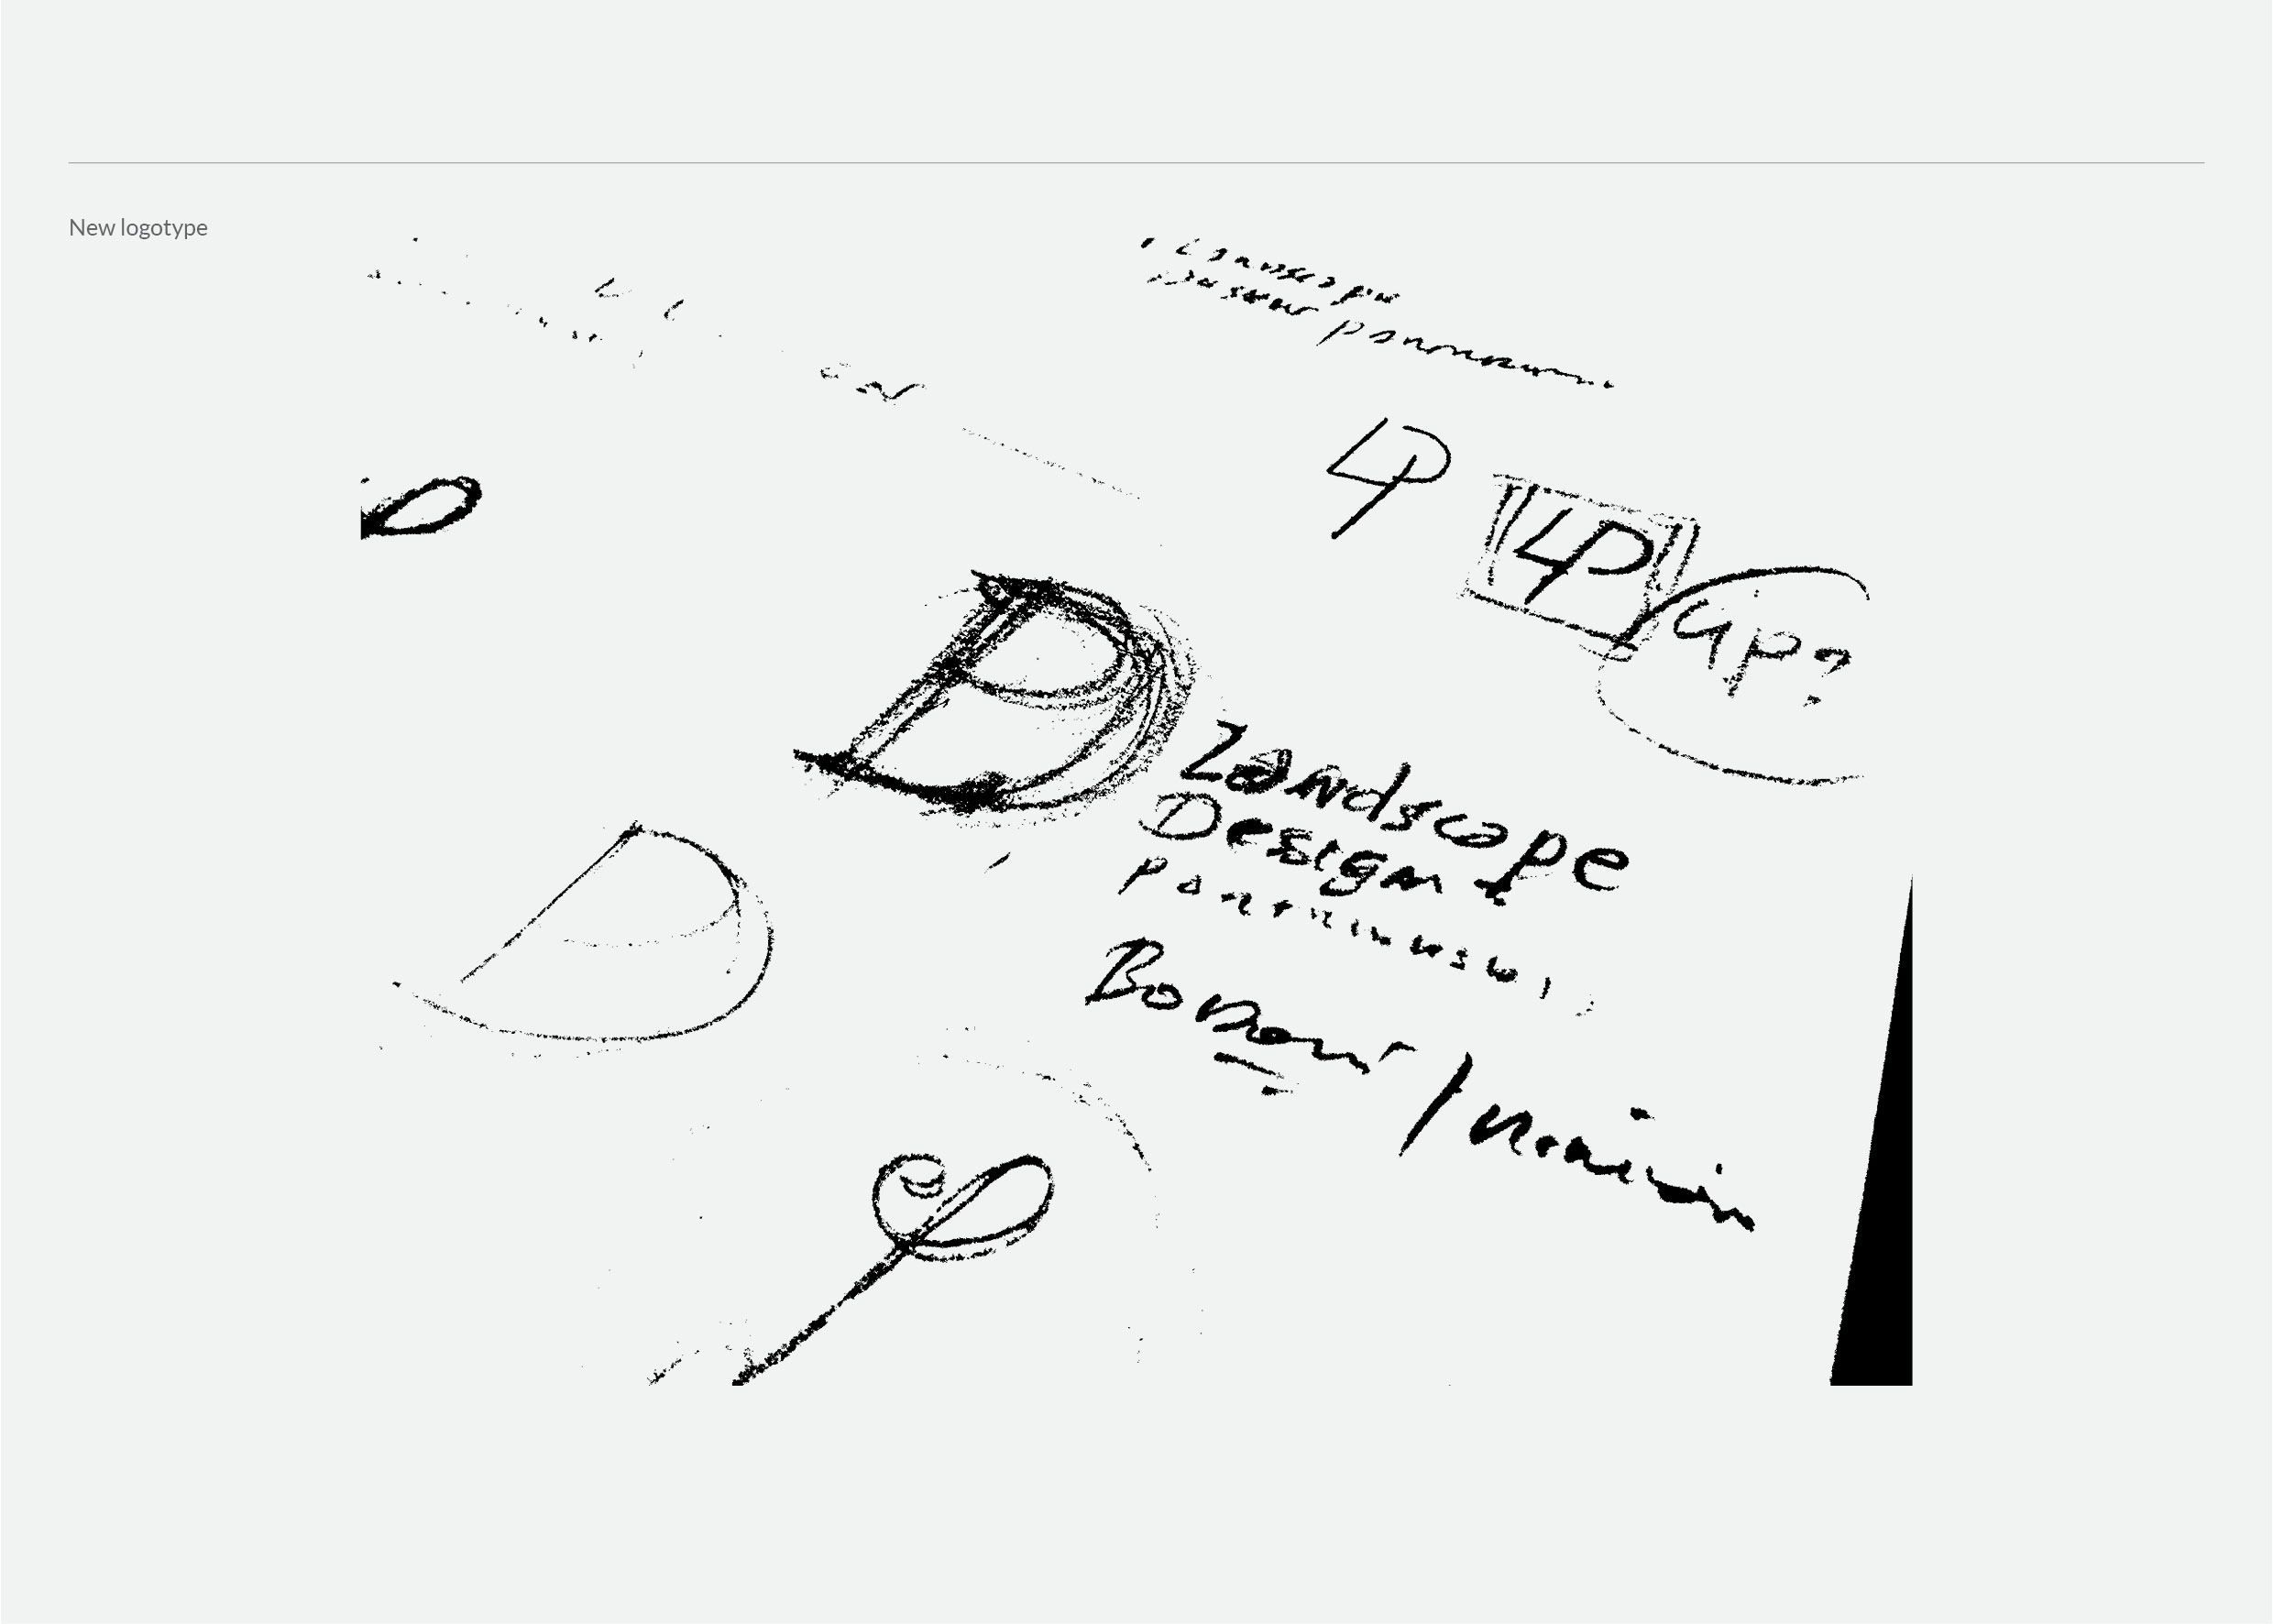 LDP logotype portofolio